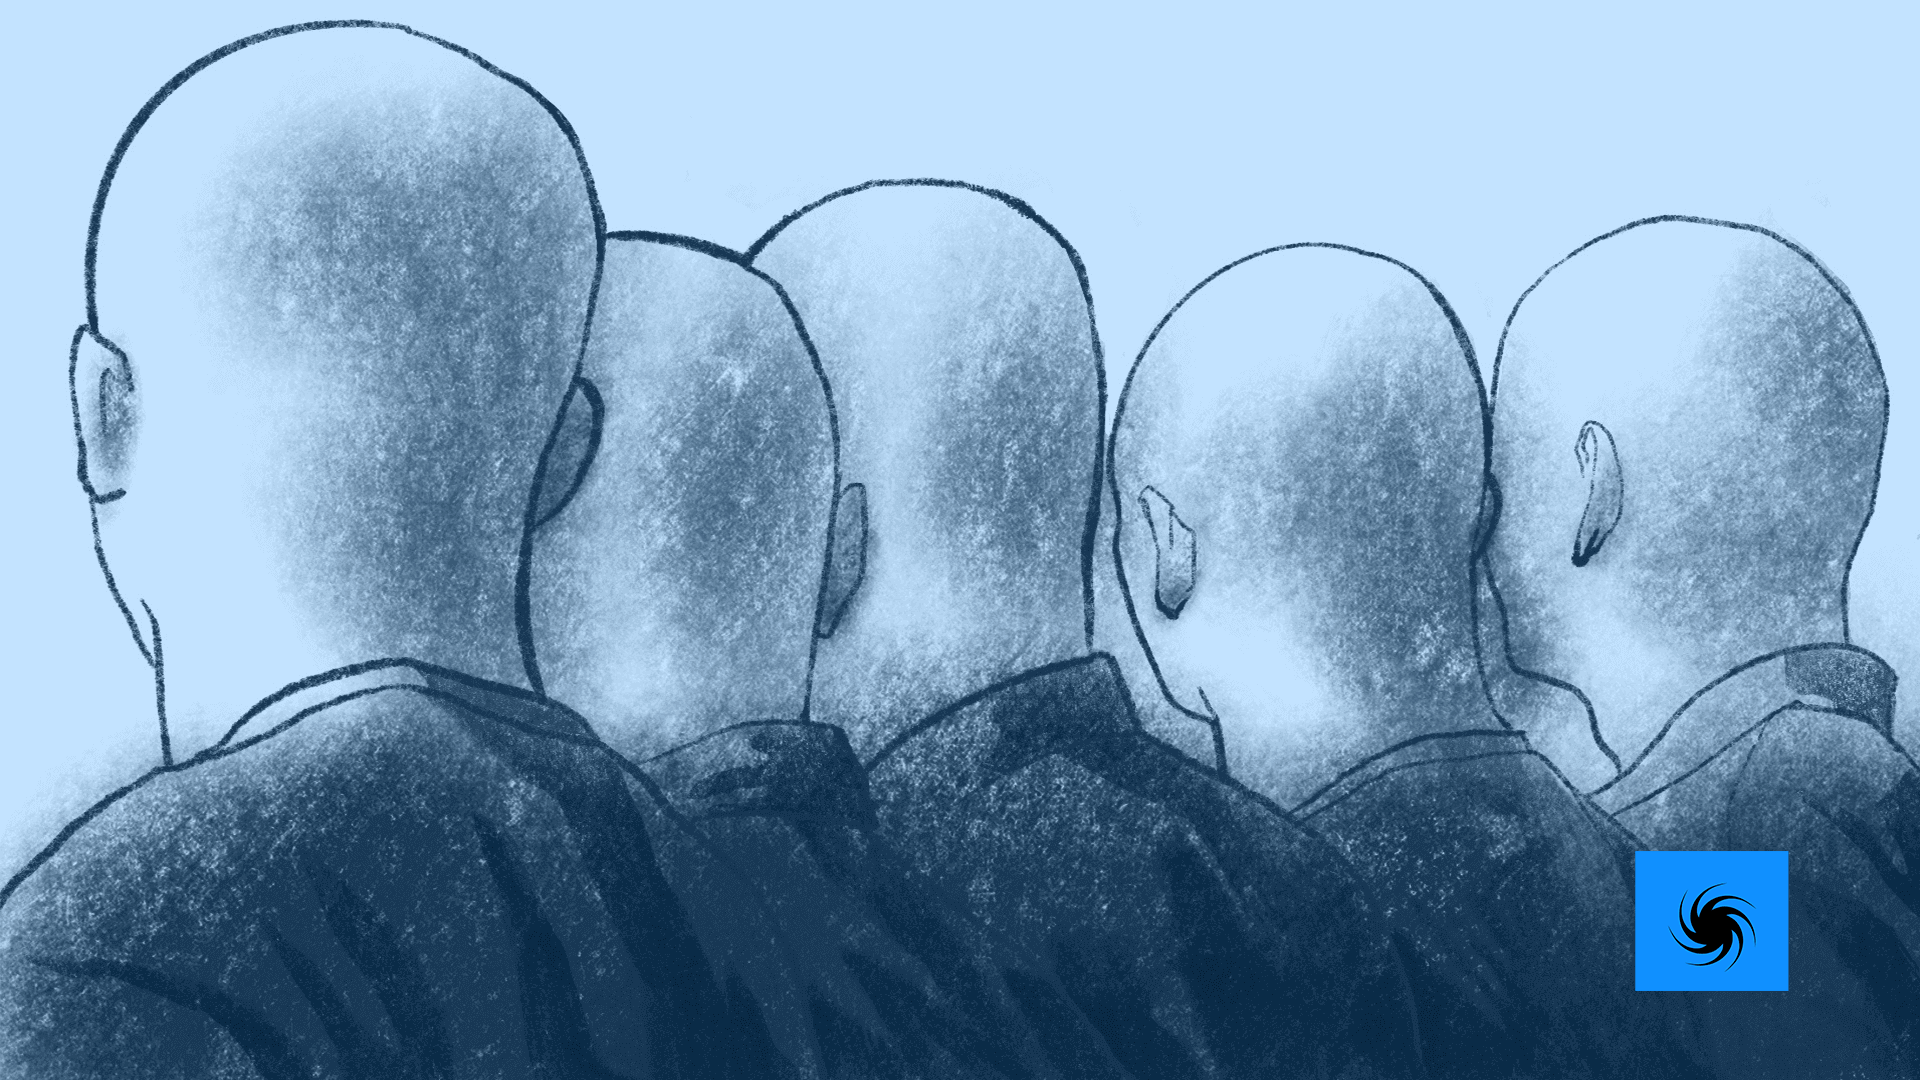 Fünf glatzköpfige Männer sind von hintern zu sehen. Sie tragen alle eine schwarze Bomberjacke. Das Bild ist eine Belistiftillustration.